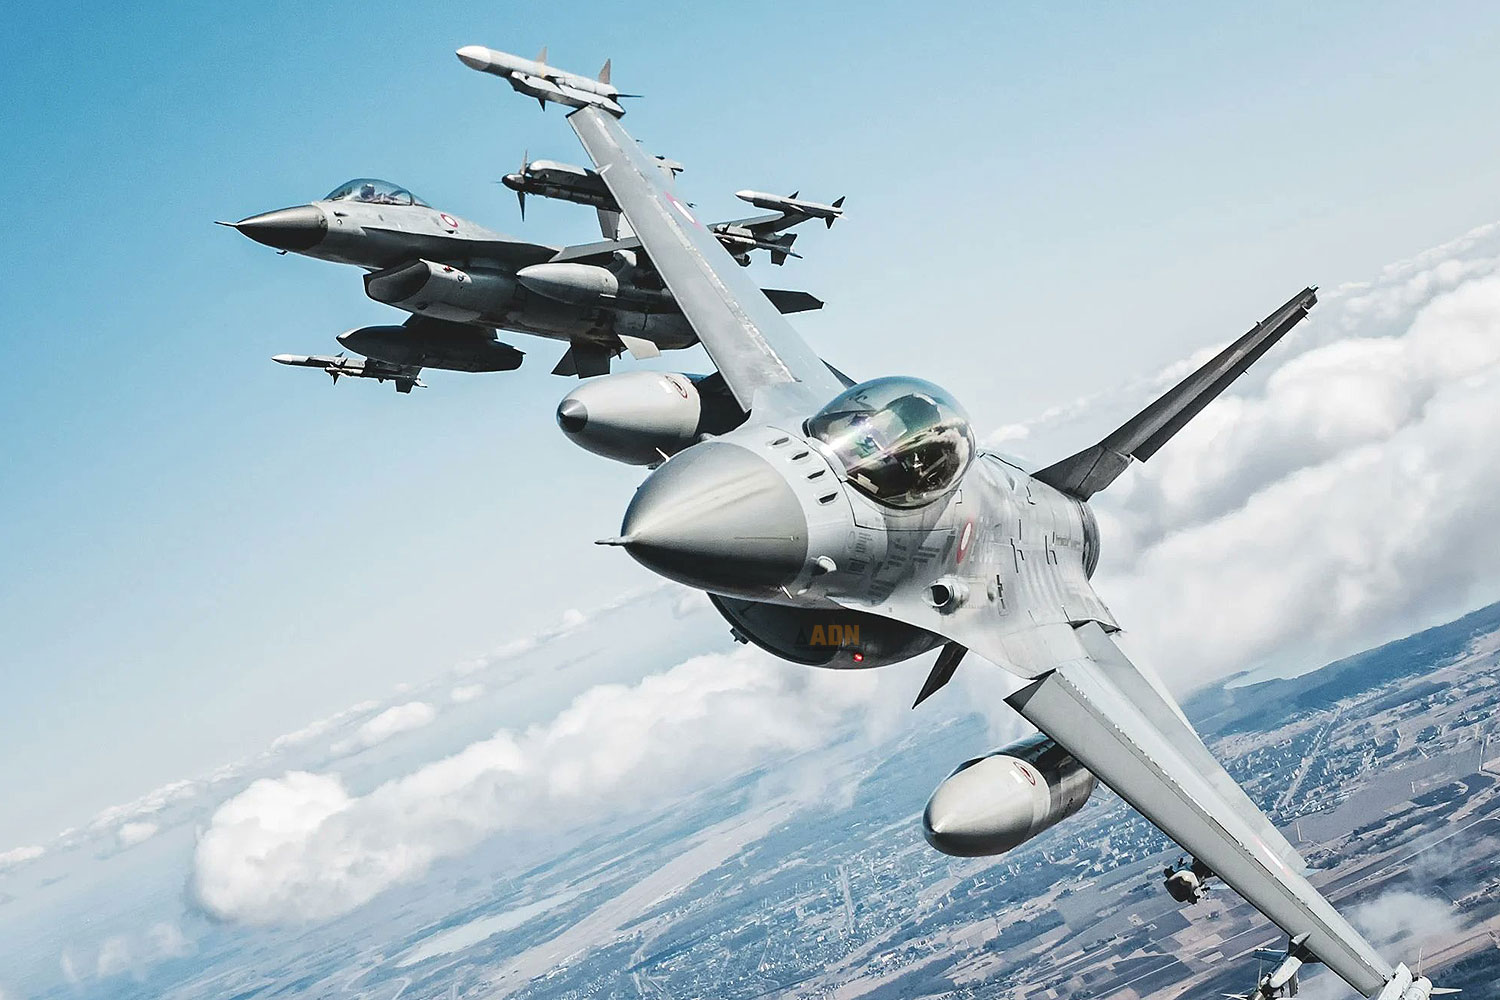 La compra de nuevos aviones de combate por parte de Argentina debería dejarse en manos del próximo gobierno